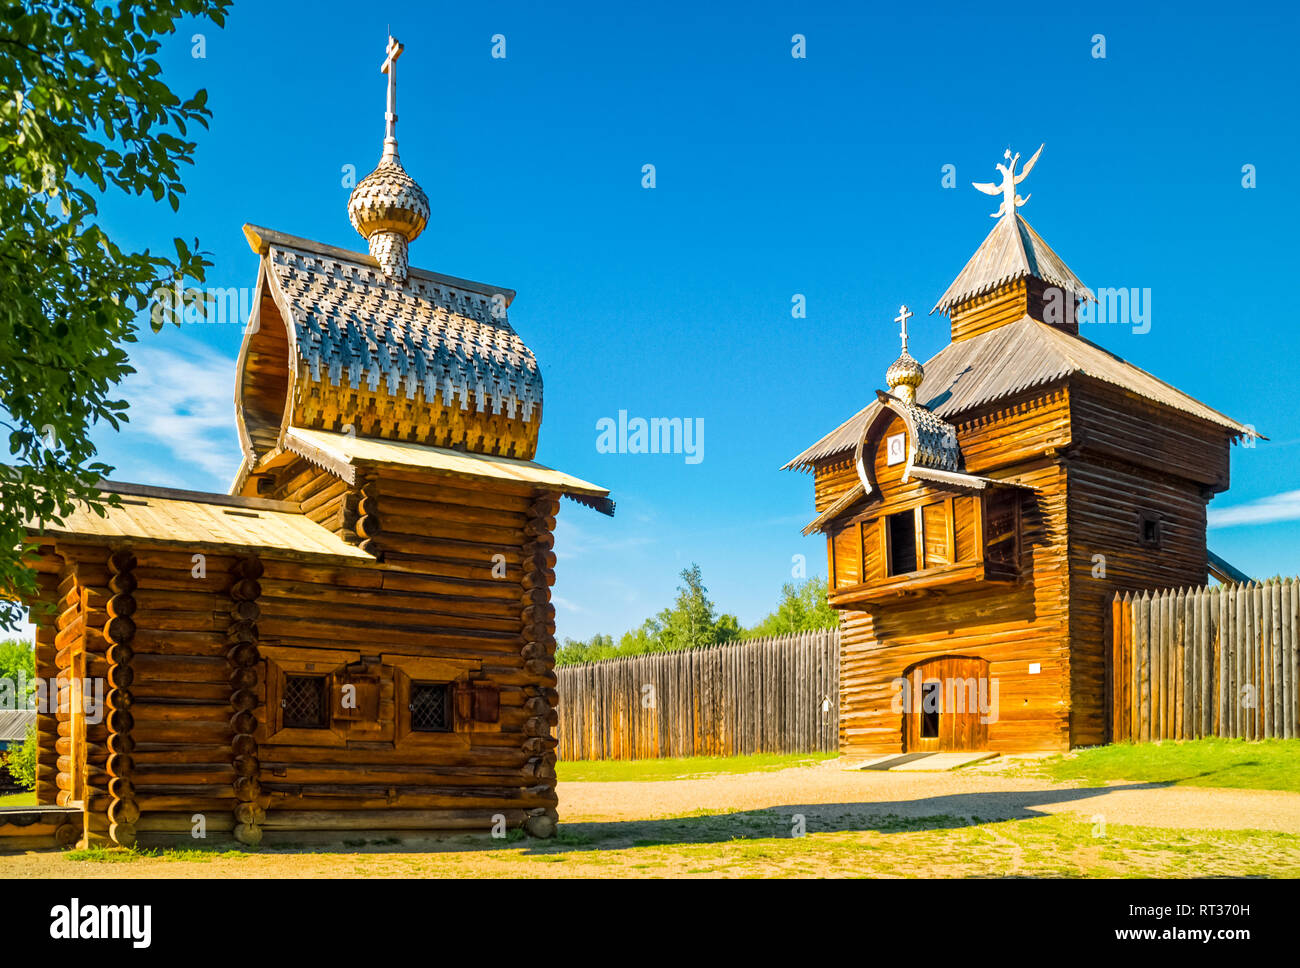 Taltsy è un patrimonio architettonico e museo etnografico del Siberiano architettura in legno. Foto Stock